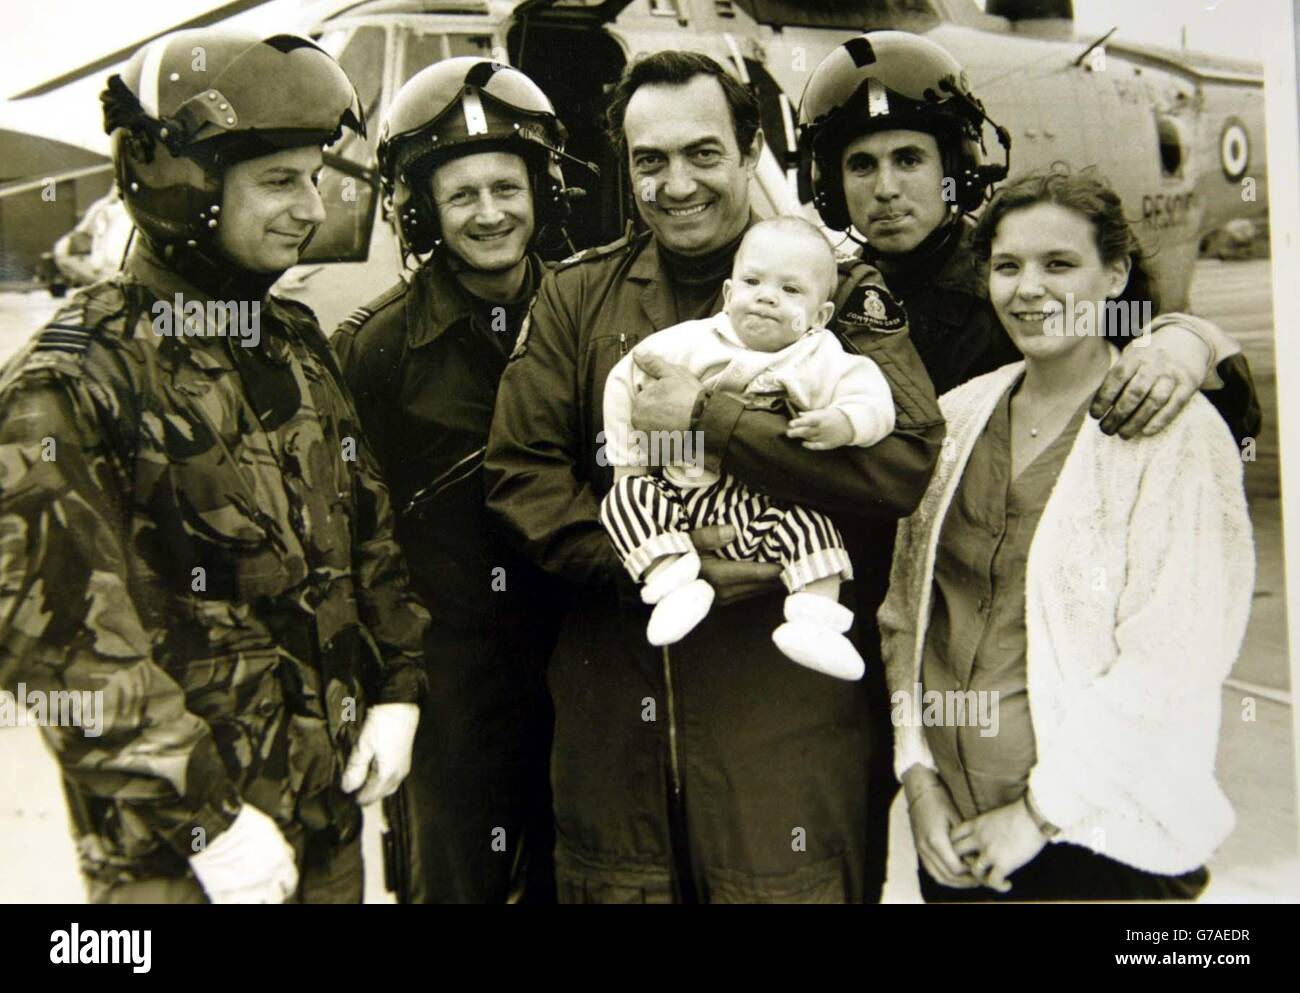 Base aérienne de RAF Kinloss, Morayshire, Écosse, RAF Rescue Winchman, centre Bob Pountney tenant le bébé Sam Harcus après qu'il ait sauvé sa vie en mission il y a 16 ans. Photo avec d'autres membres de l'équipage et la mère de Sams, Gillian Harcus. Banque D'Images